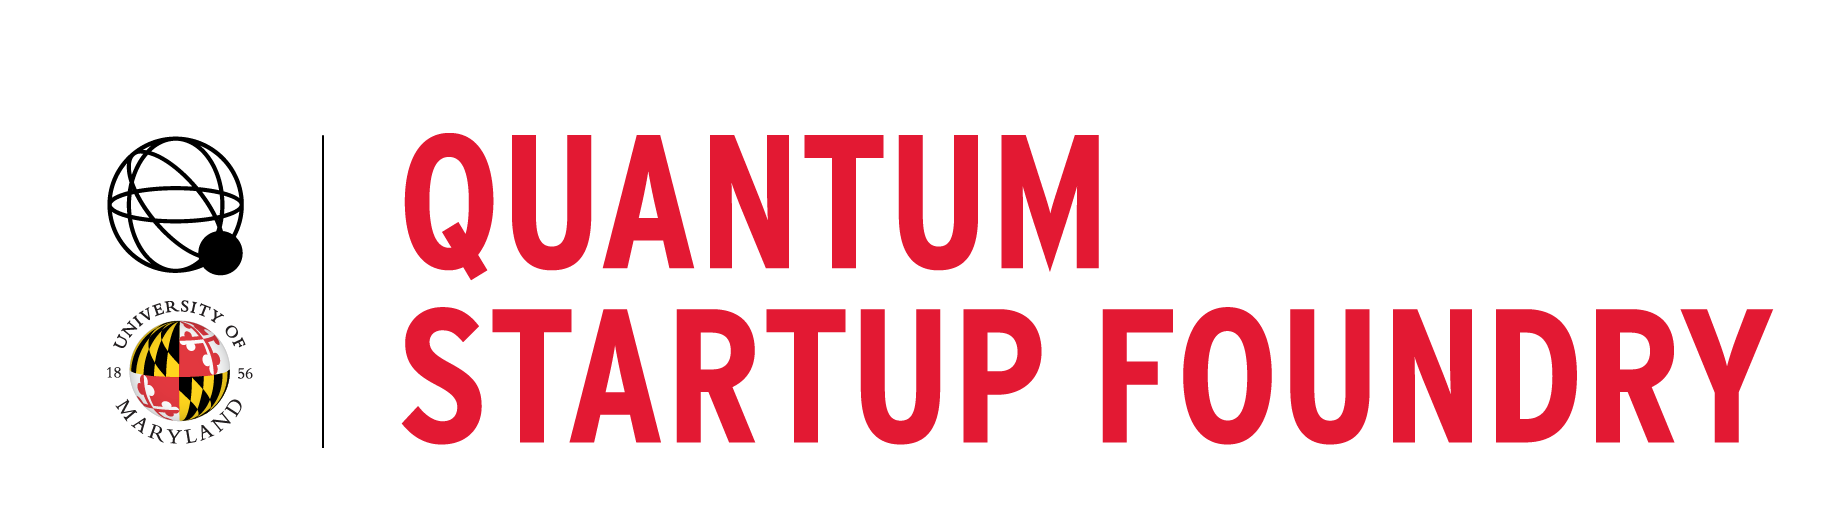 UMD Quantum Startup Foundry